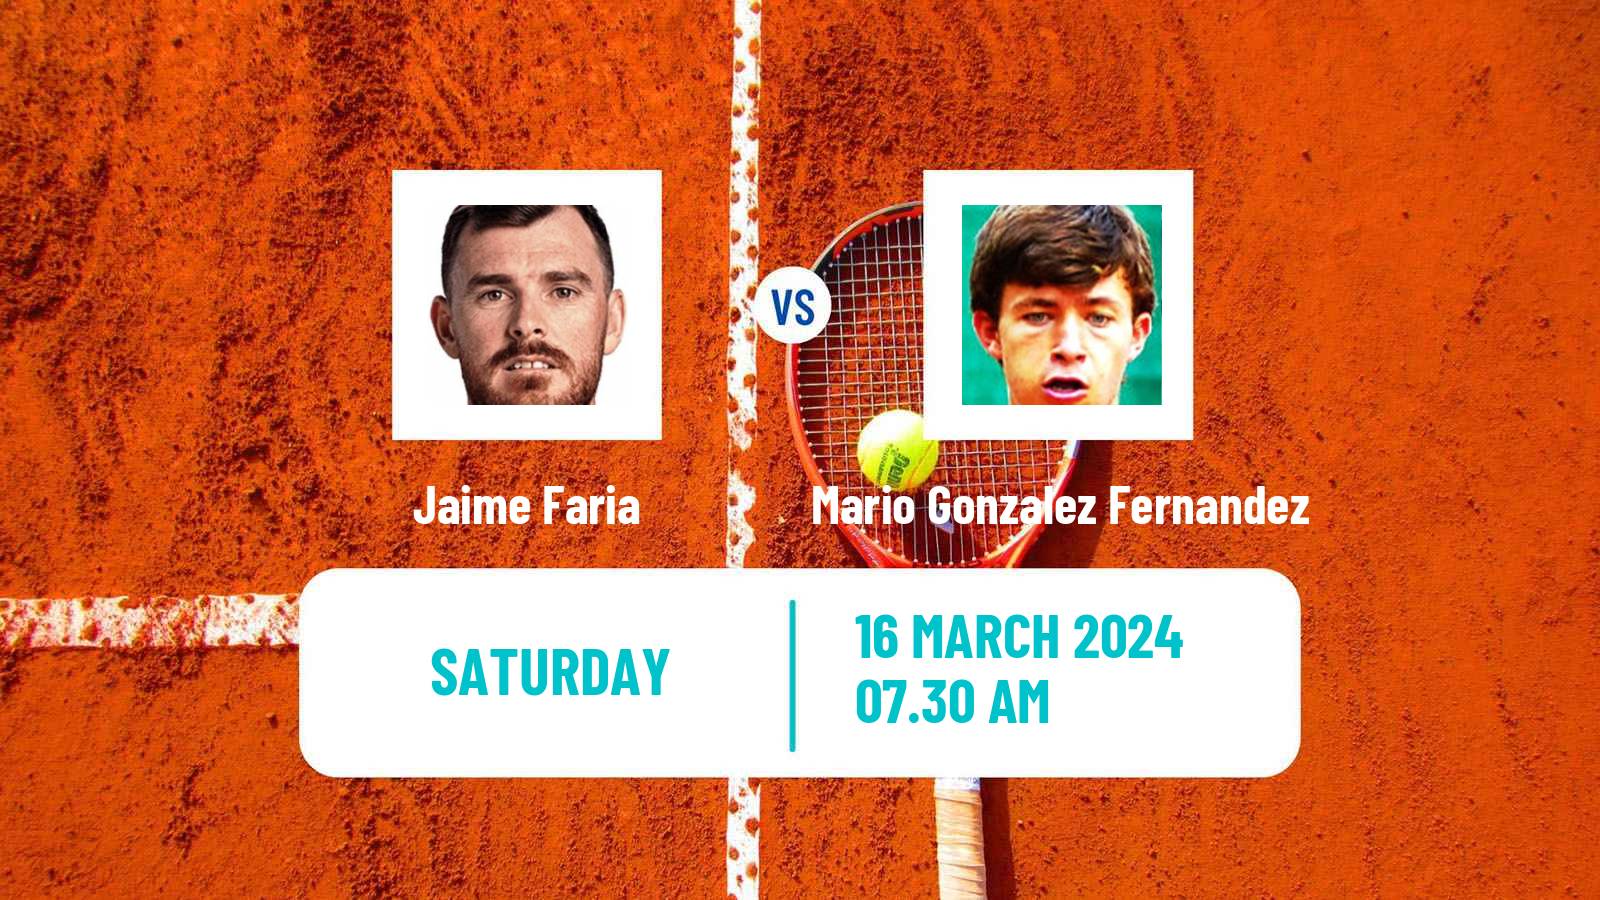 Tennis ITF M25 Vale Do Lobo Men Jaime Faria - Mario Gonzalez Fernandez